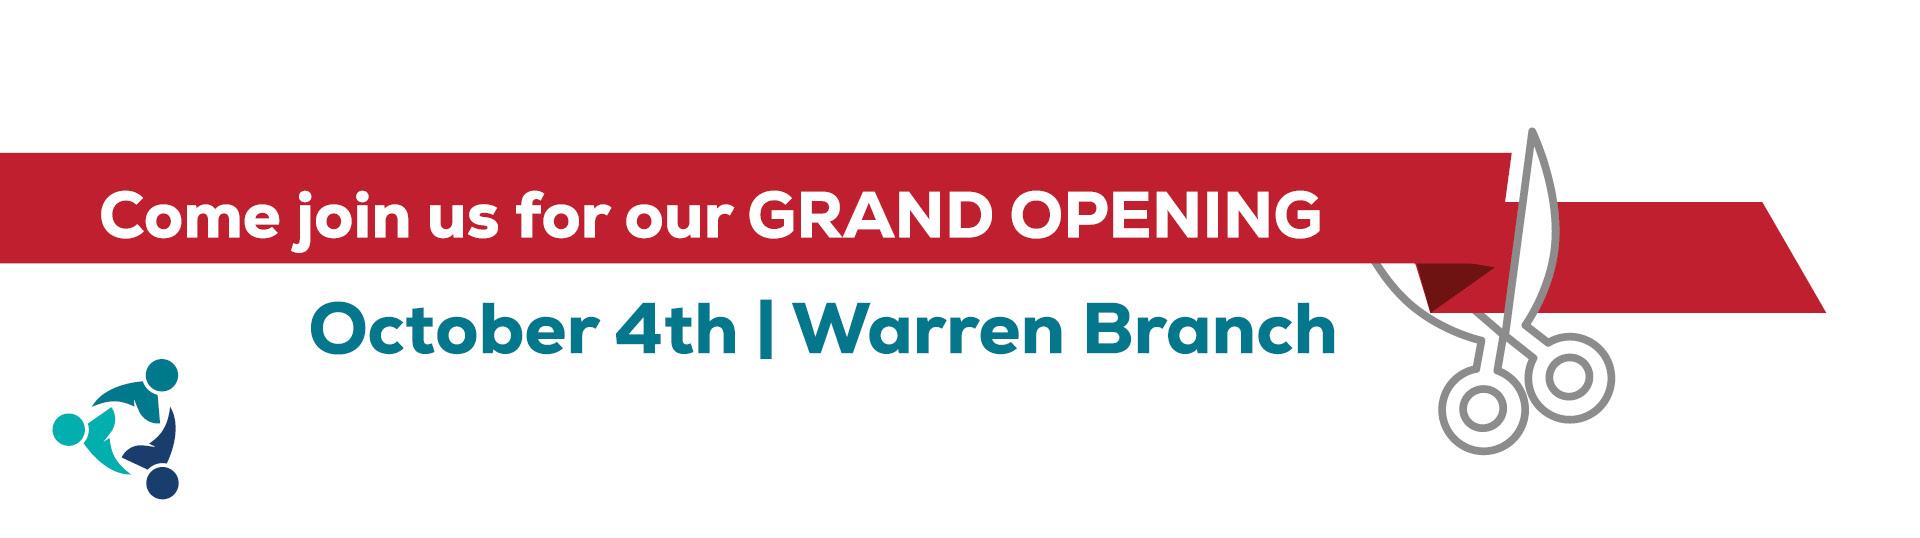 warren grand opening